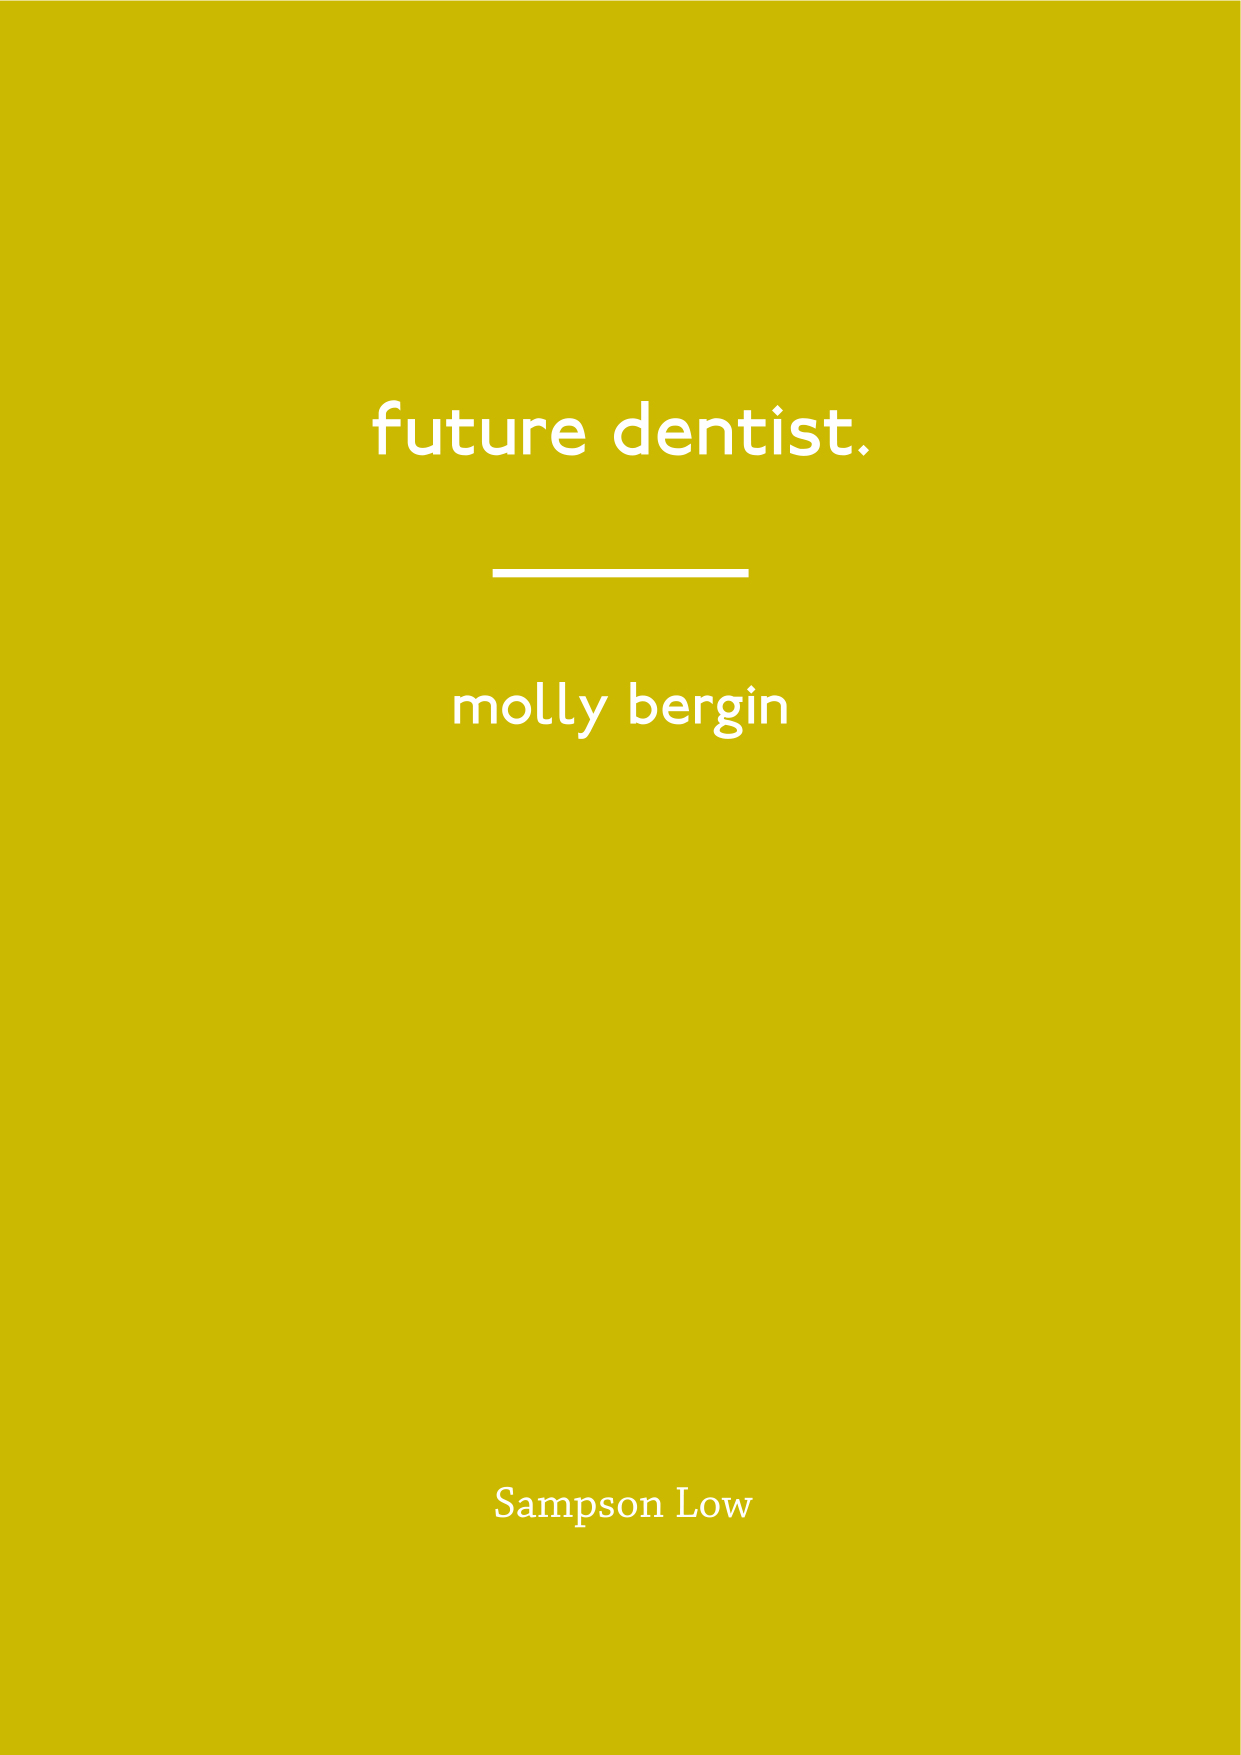 Future_Dentist_Molly_Bergin_2.jpg